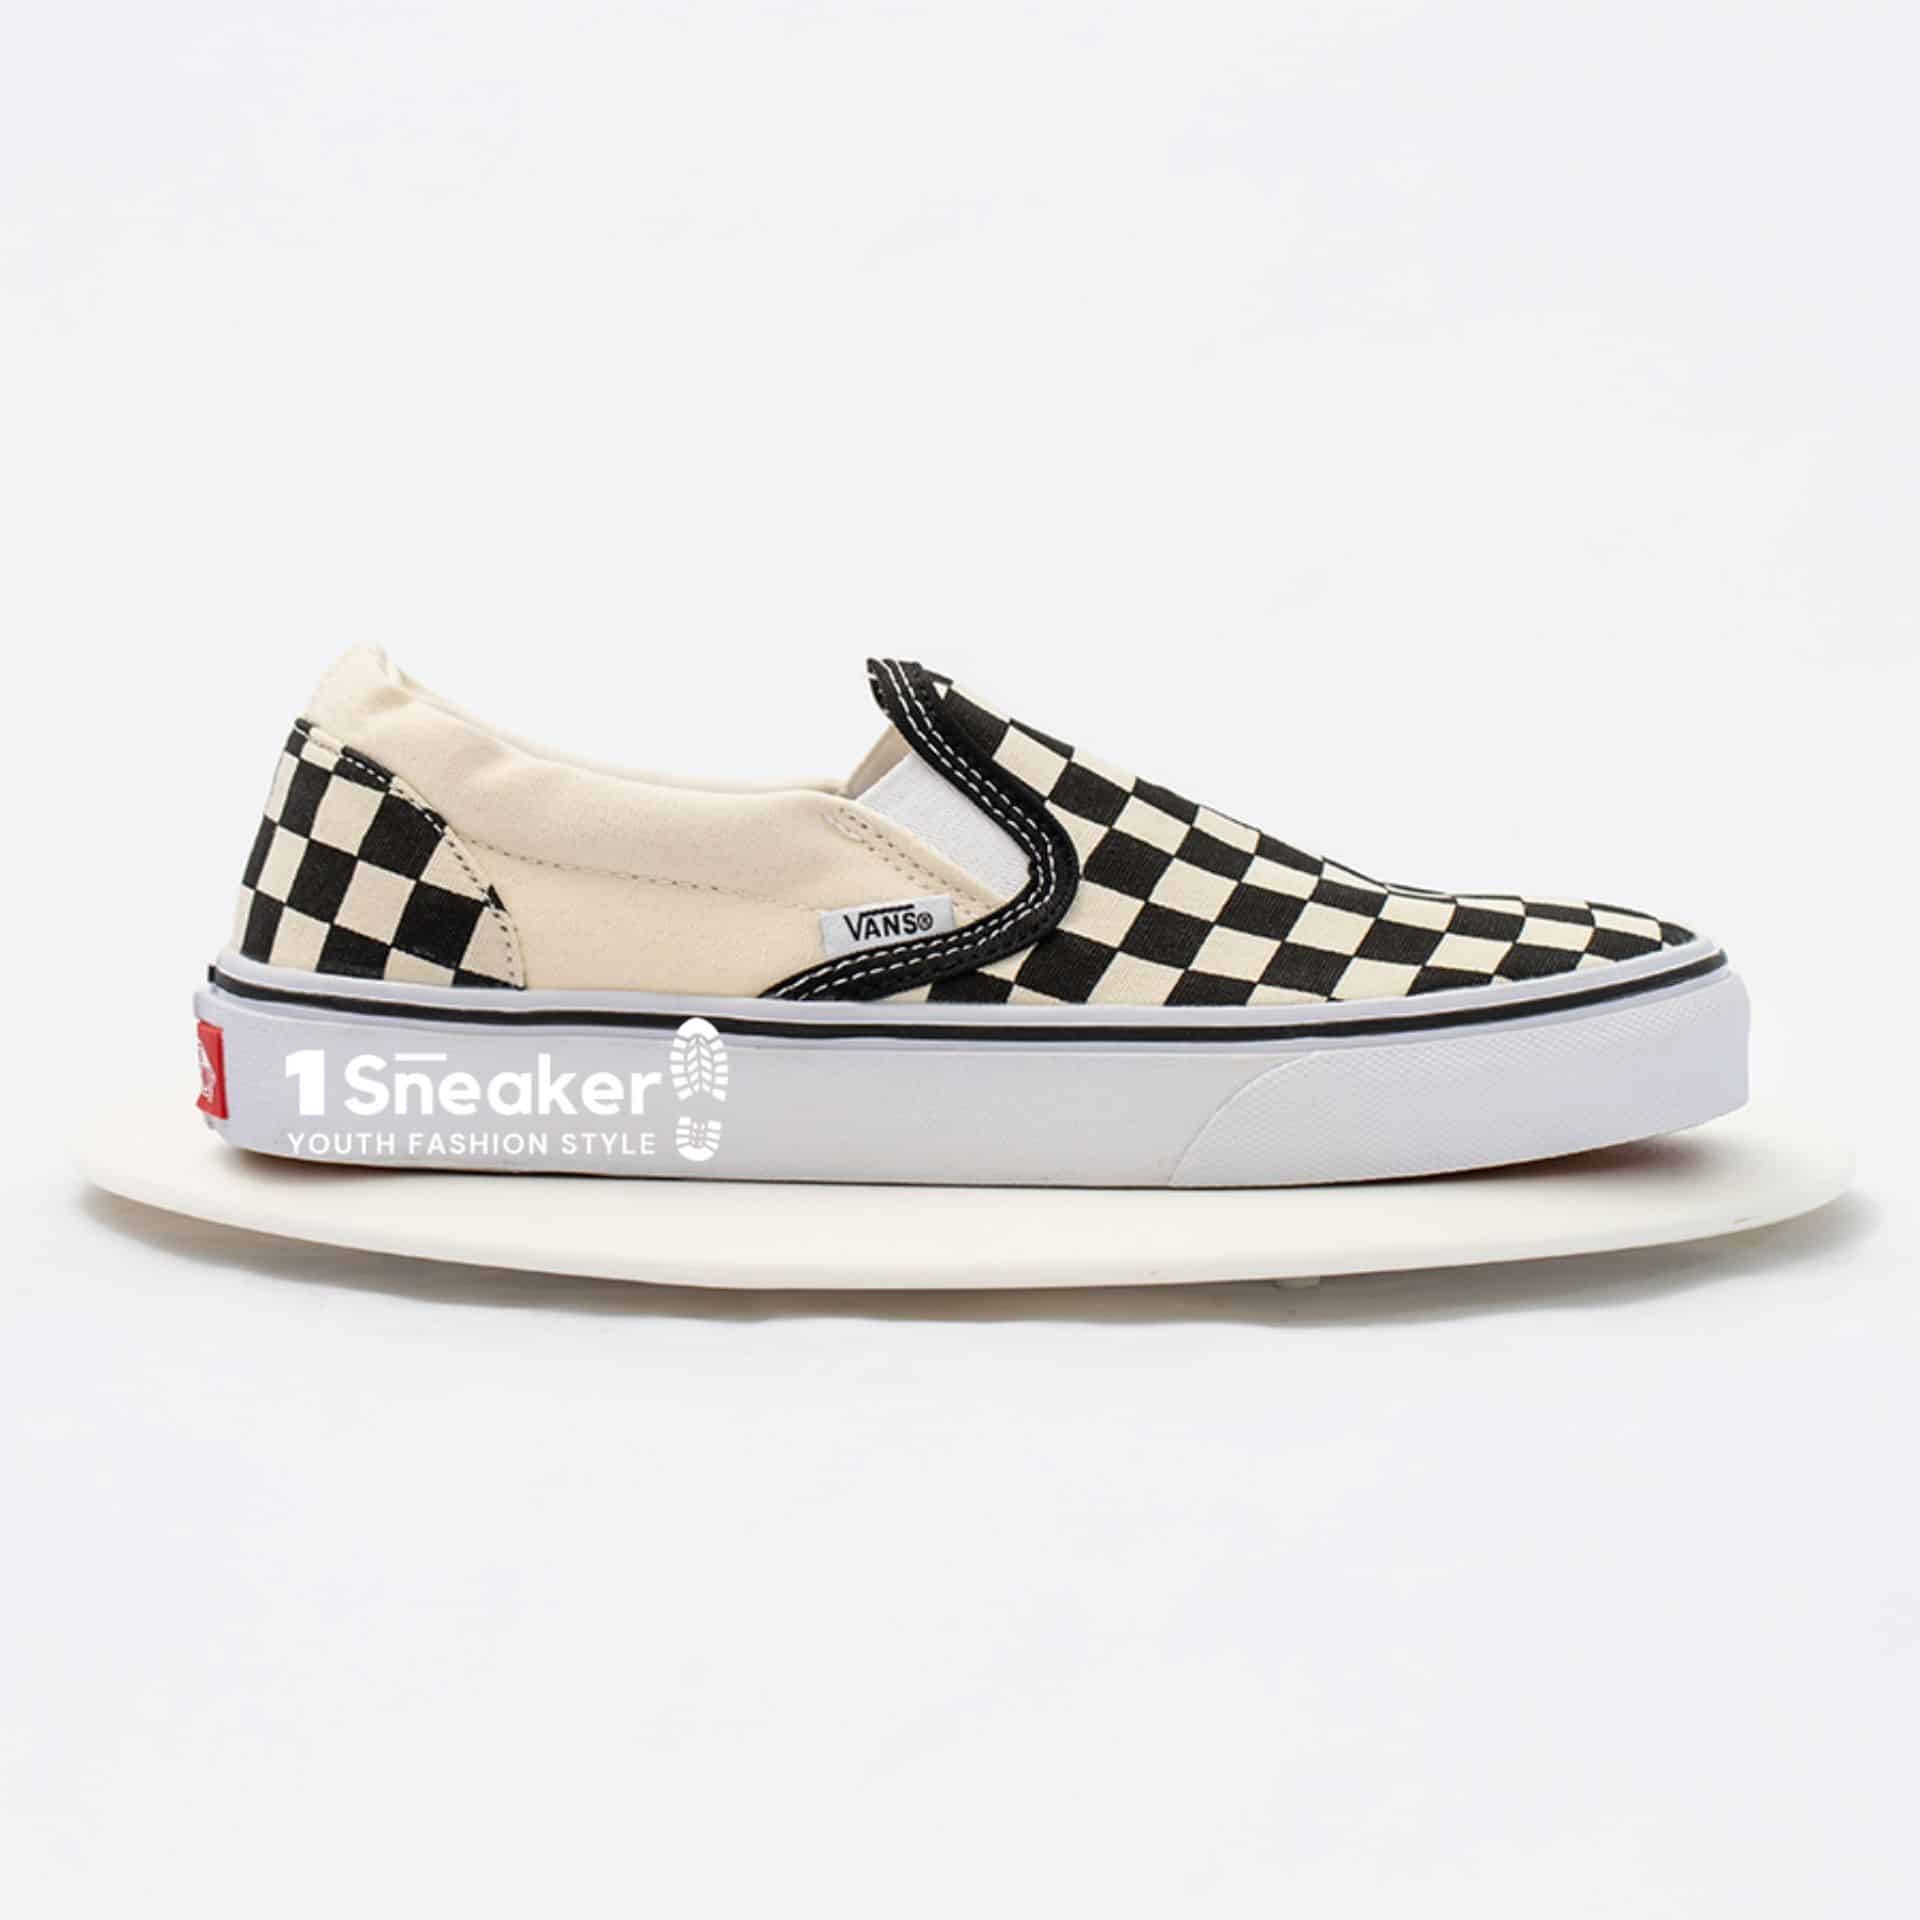 Vans Slip On Checkerboard Skate Shoe Black White 8